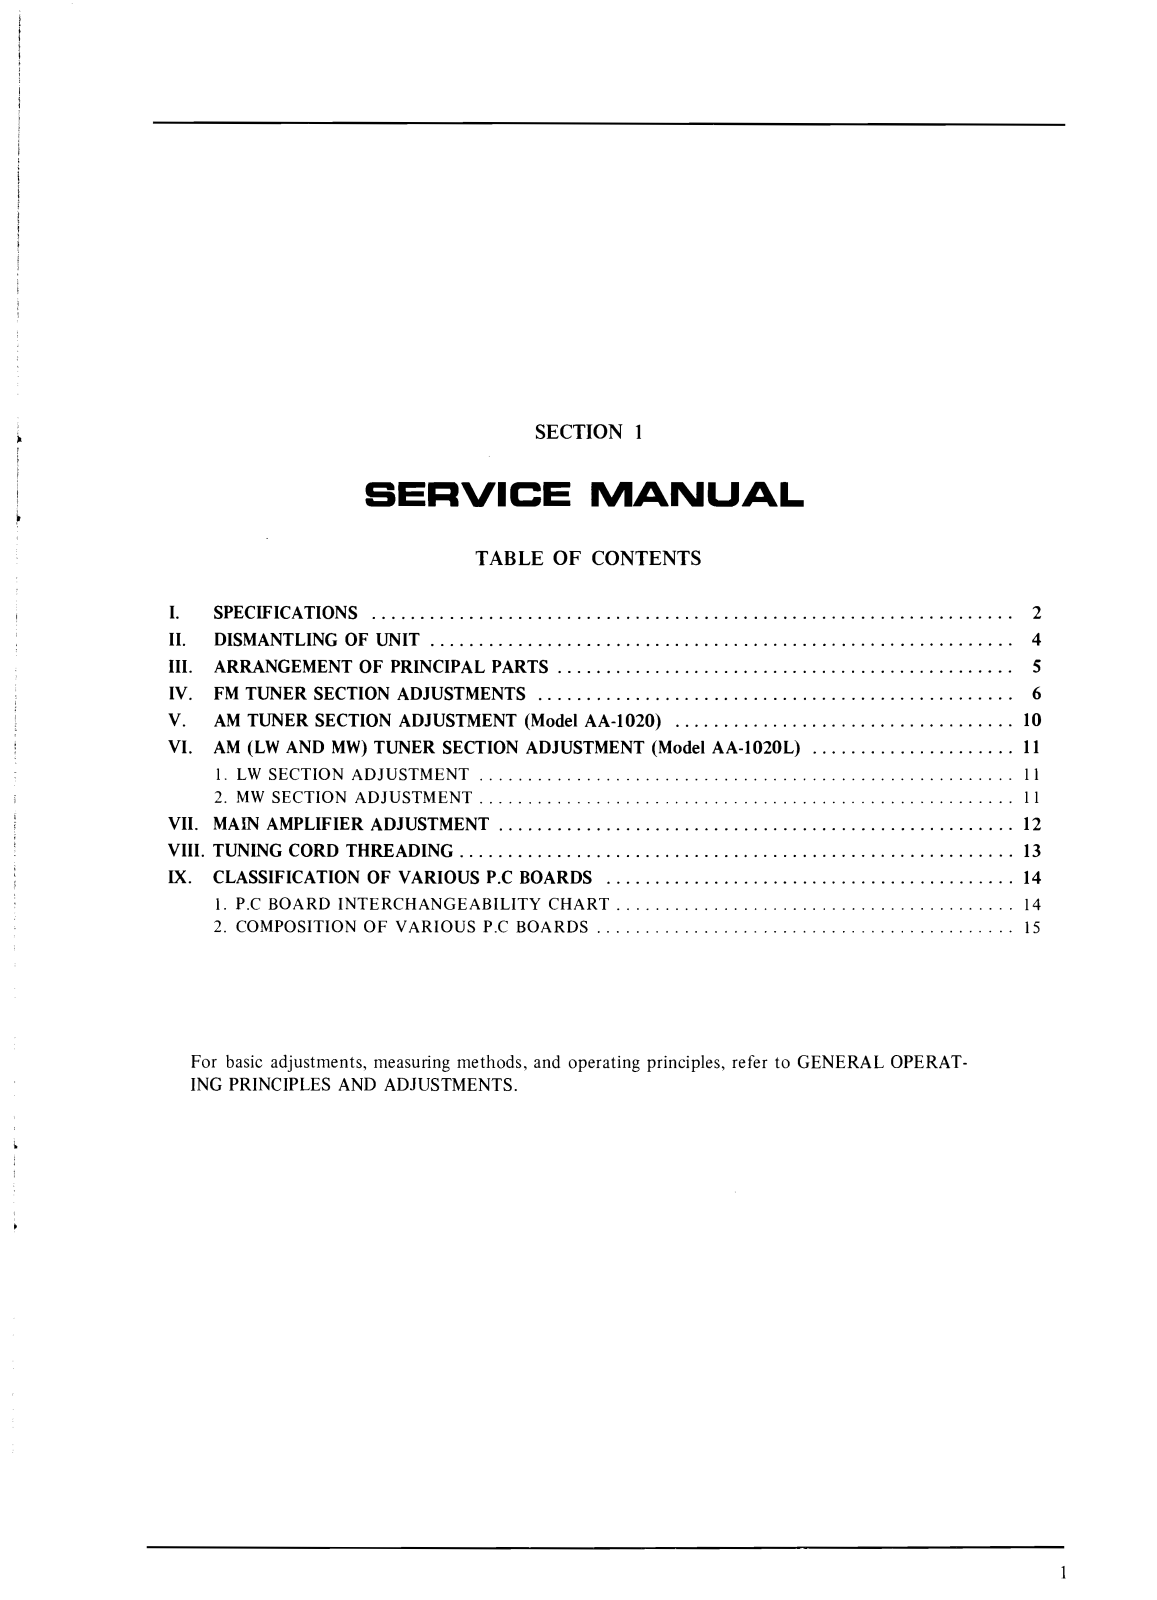 Akai AA-1020 Service manual